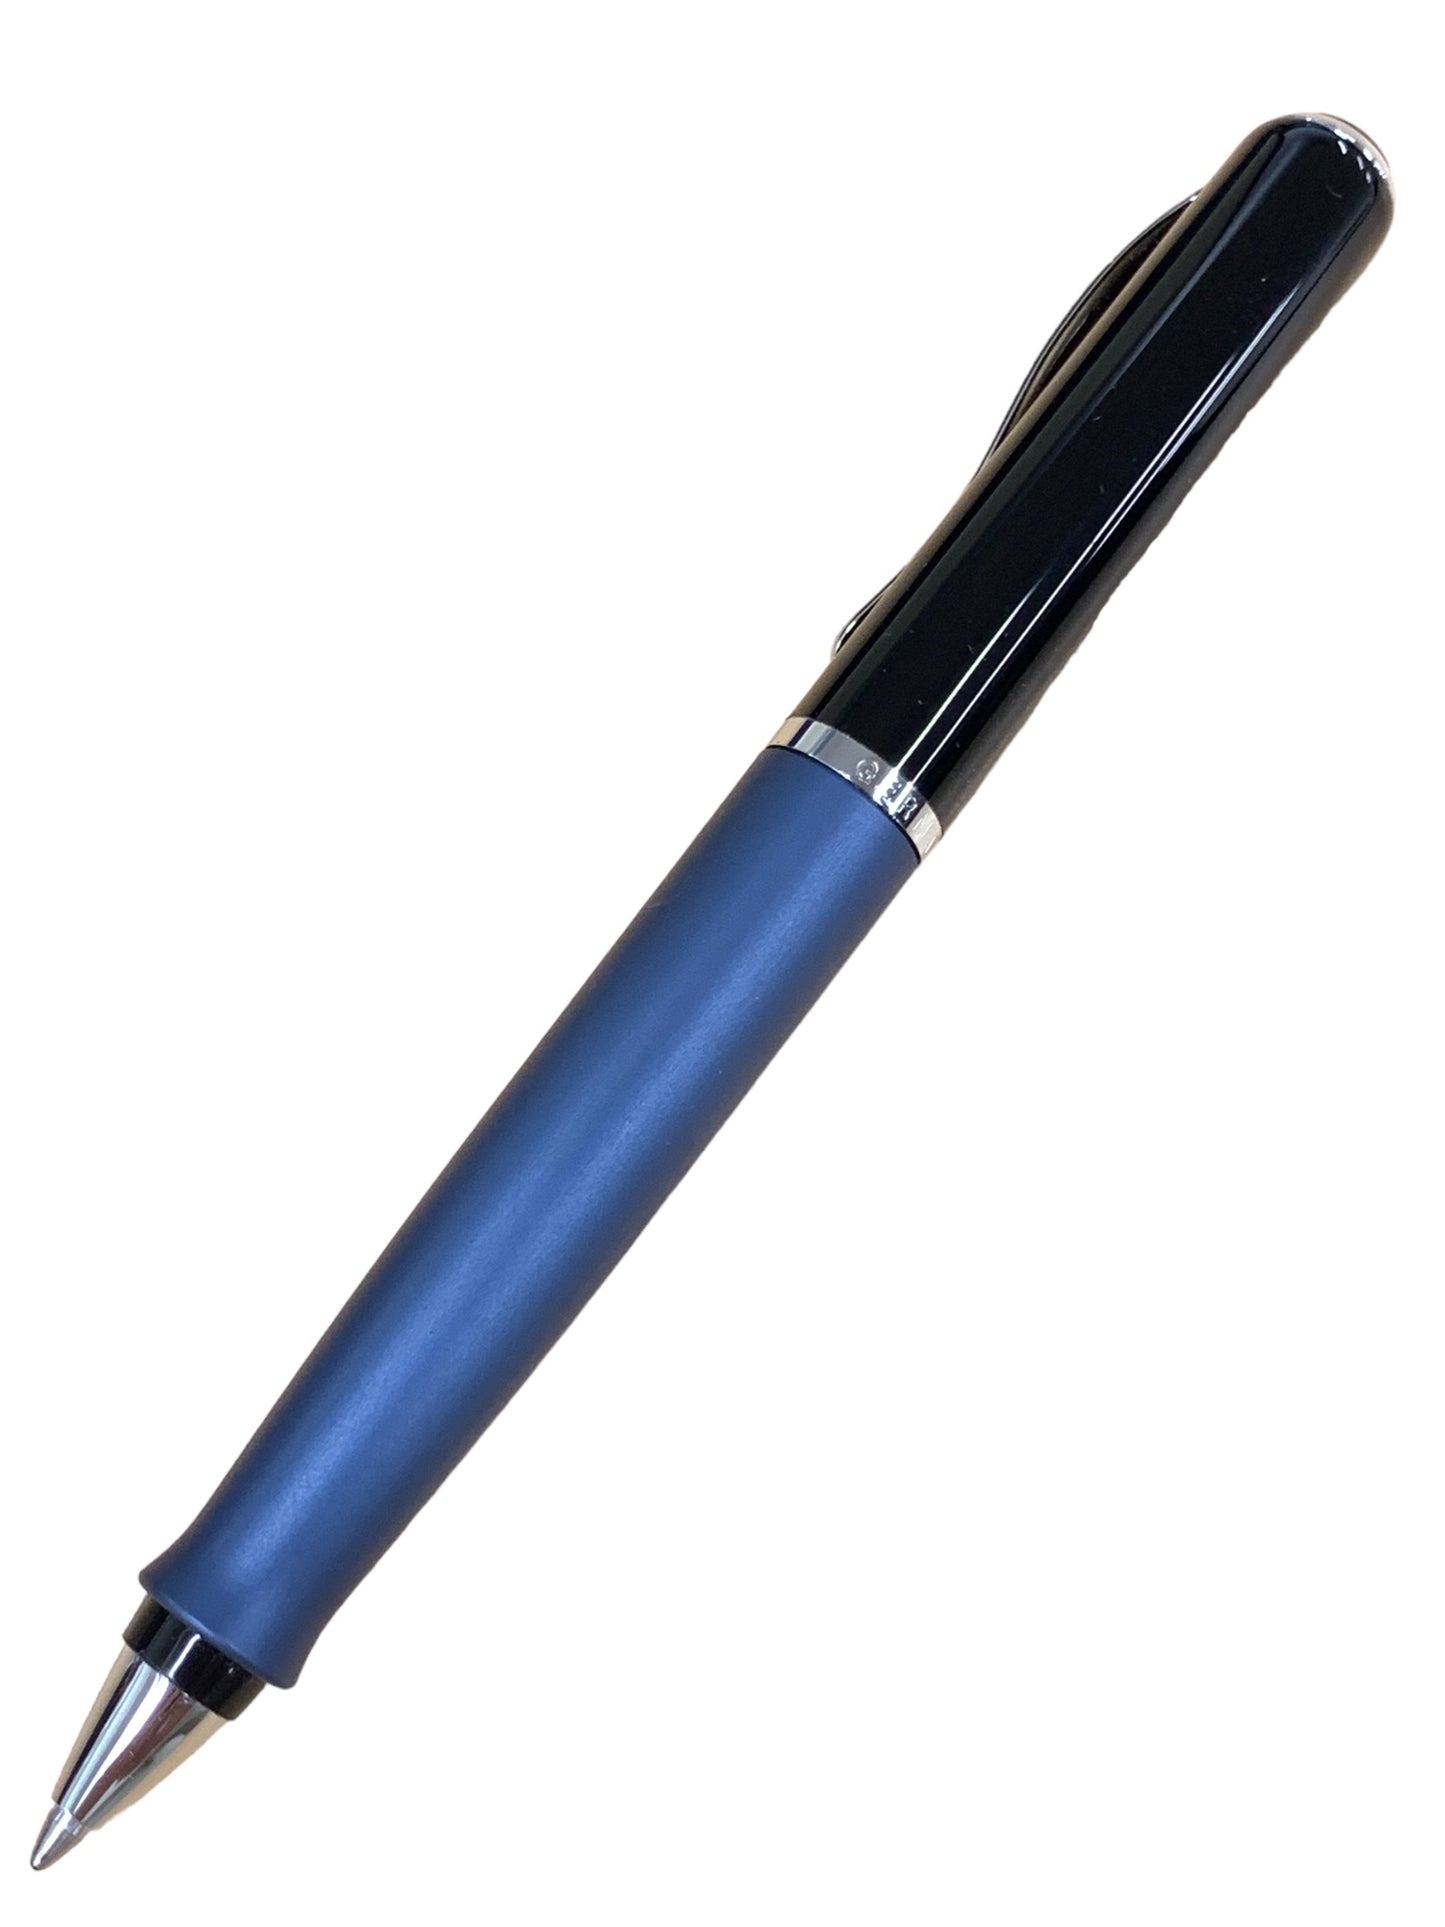 ペリカン エポック D360 ボールペン ブルー ツイスト式 ITBFPXG5KYNE